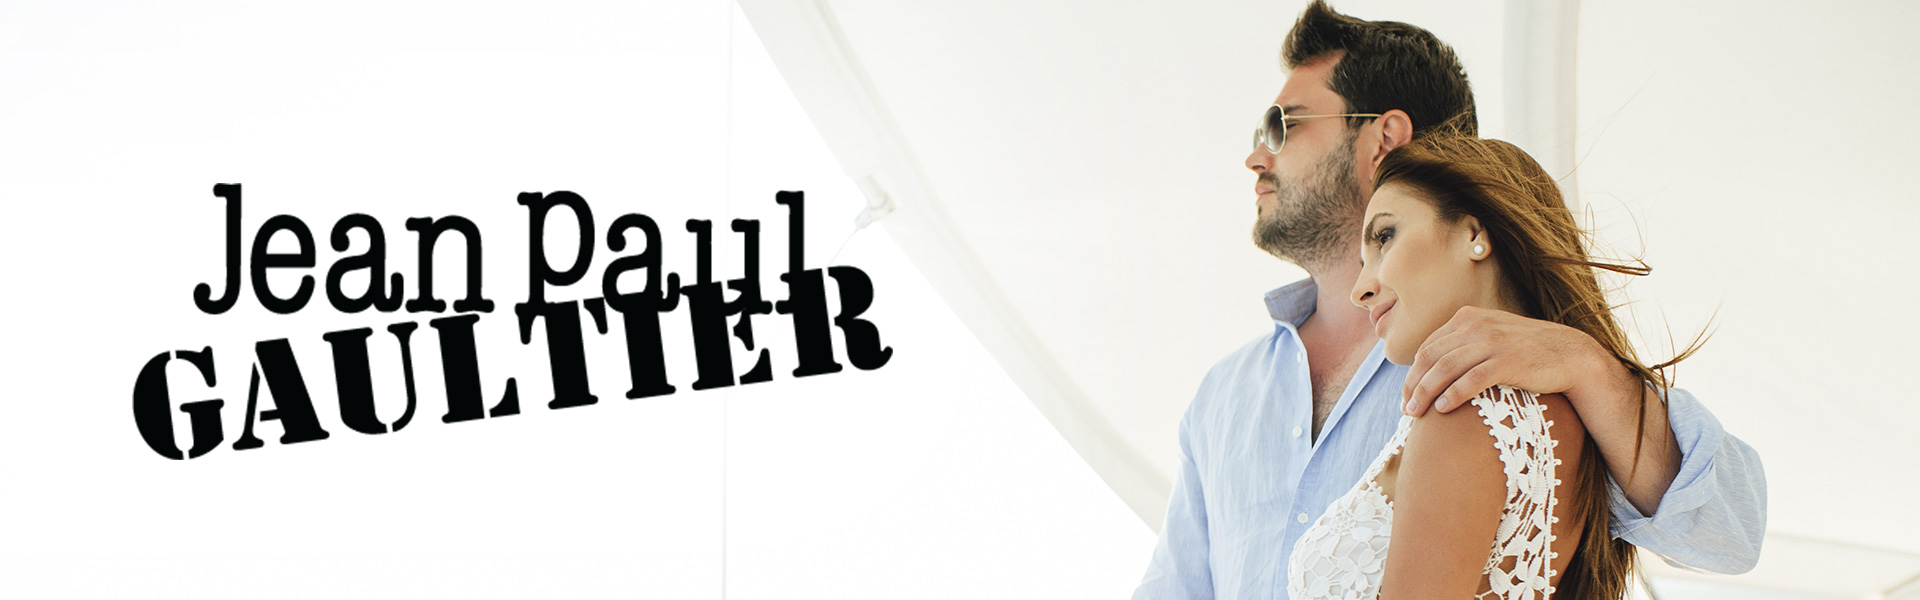 Jean Paul Gaultier Classique гель для душа 200 мл. Jean Paul Gaultier